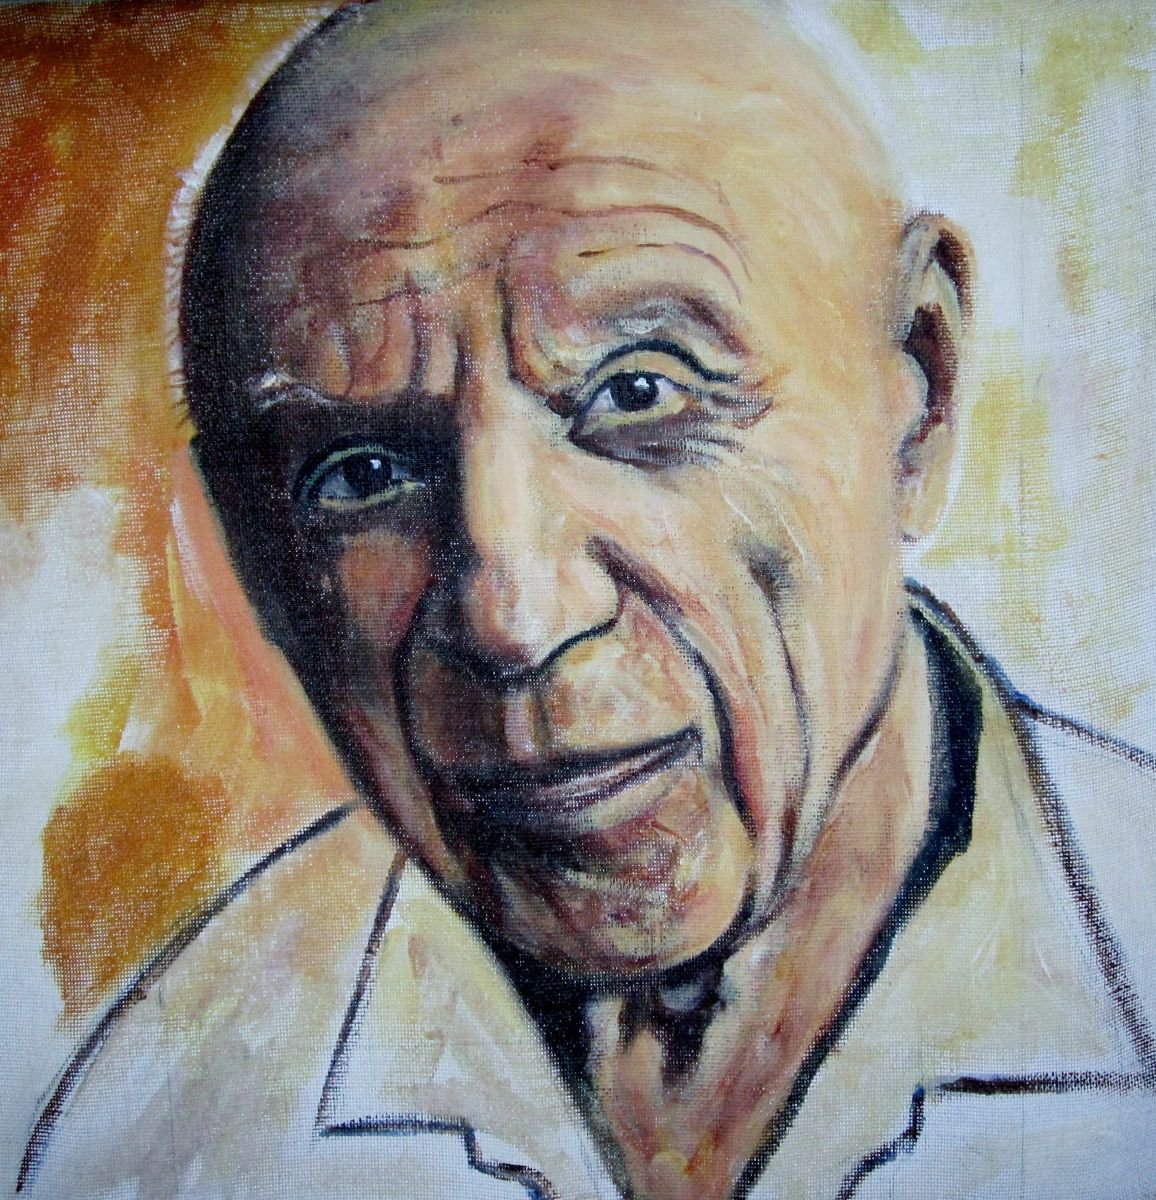 Pablo Picasso by Els Driesen